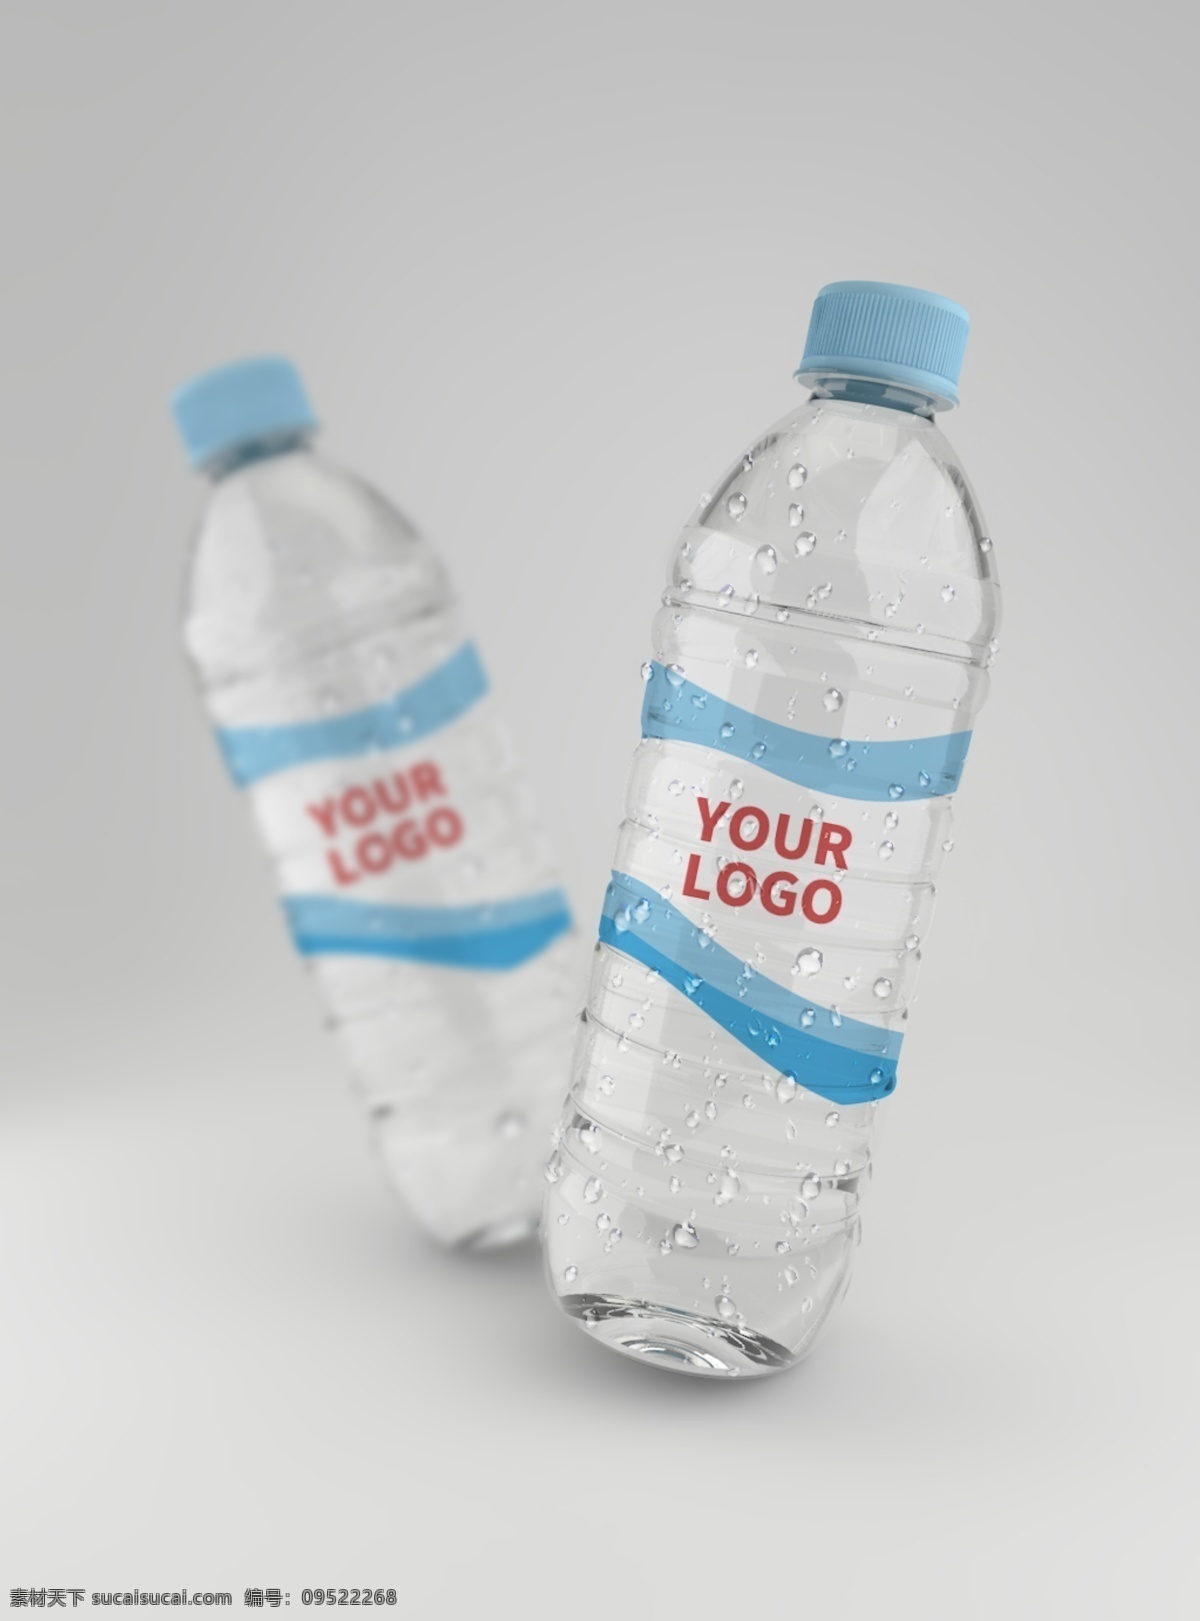 原创 模型 水 矿泉水 样机 智能图层 mockup 饮料 瓶子 矿泉水瓶 包装 一键贴图 包装样机